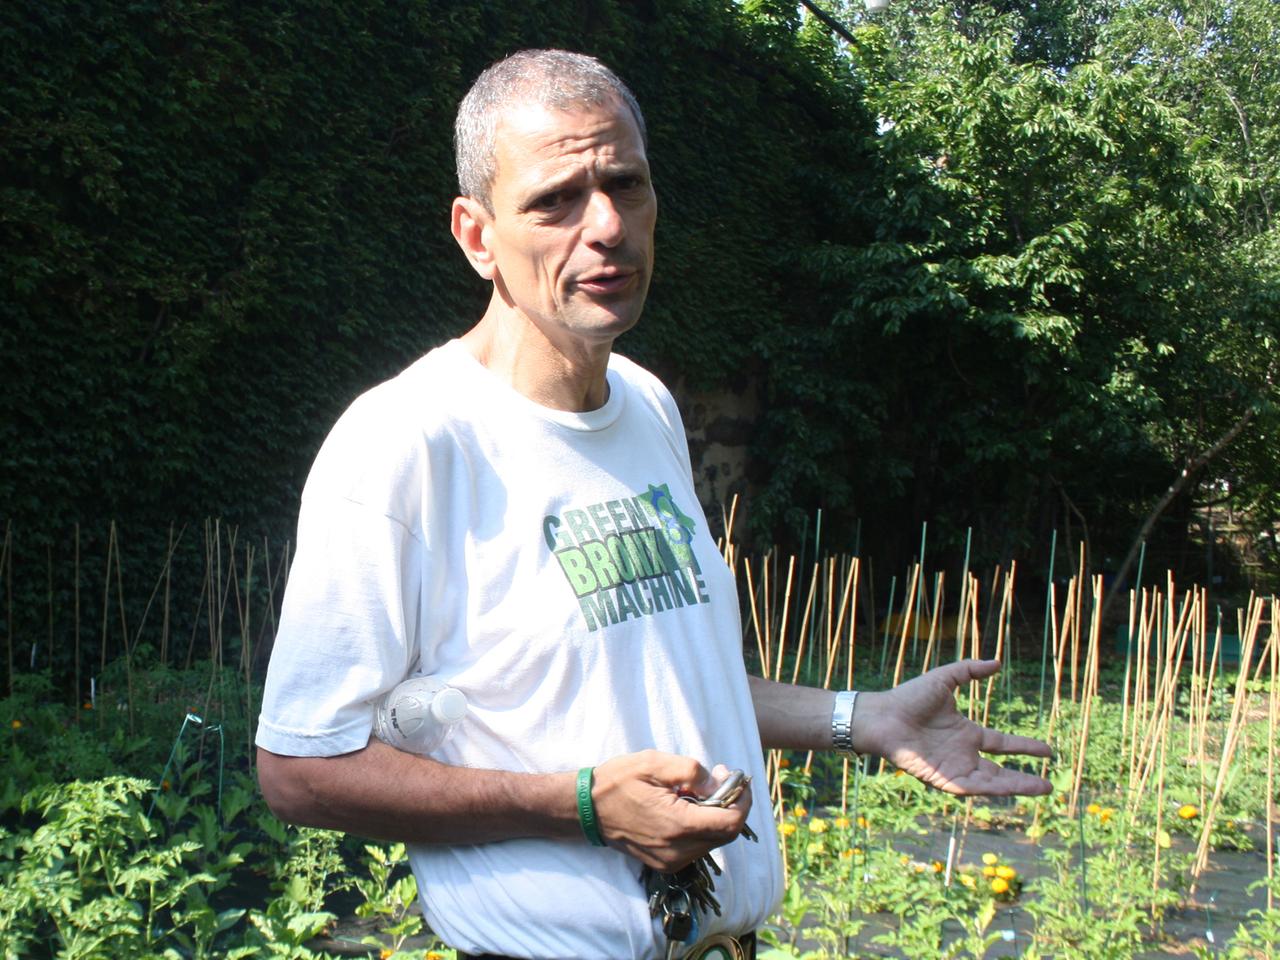 Stephen Ritz vom gemeinnützigen Verein "Green Bronx Machine" im Gemeinschaftsgarten "Bissel Gardens" im New Yorker Stadtteil Bronx.